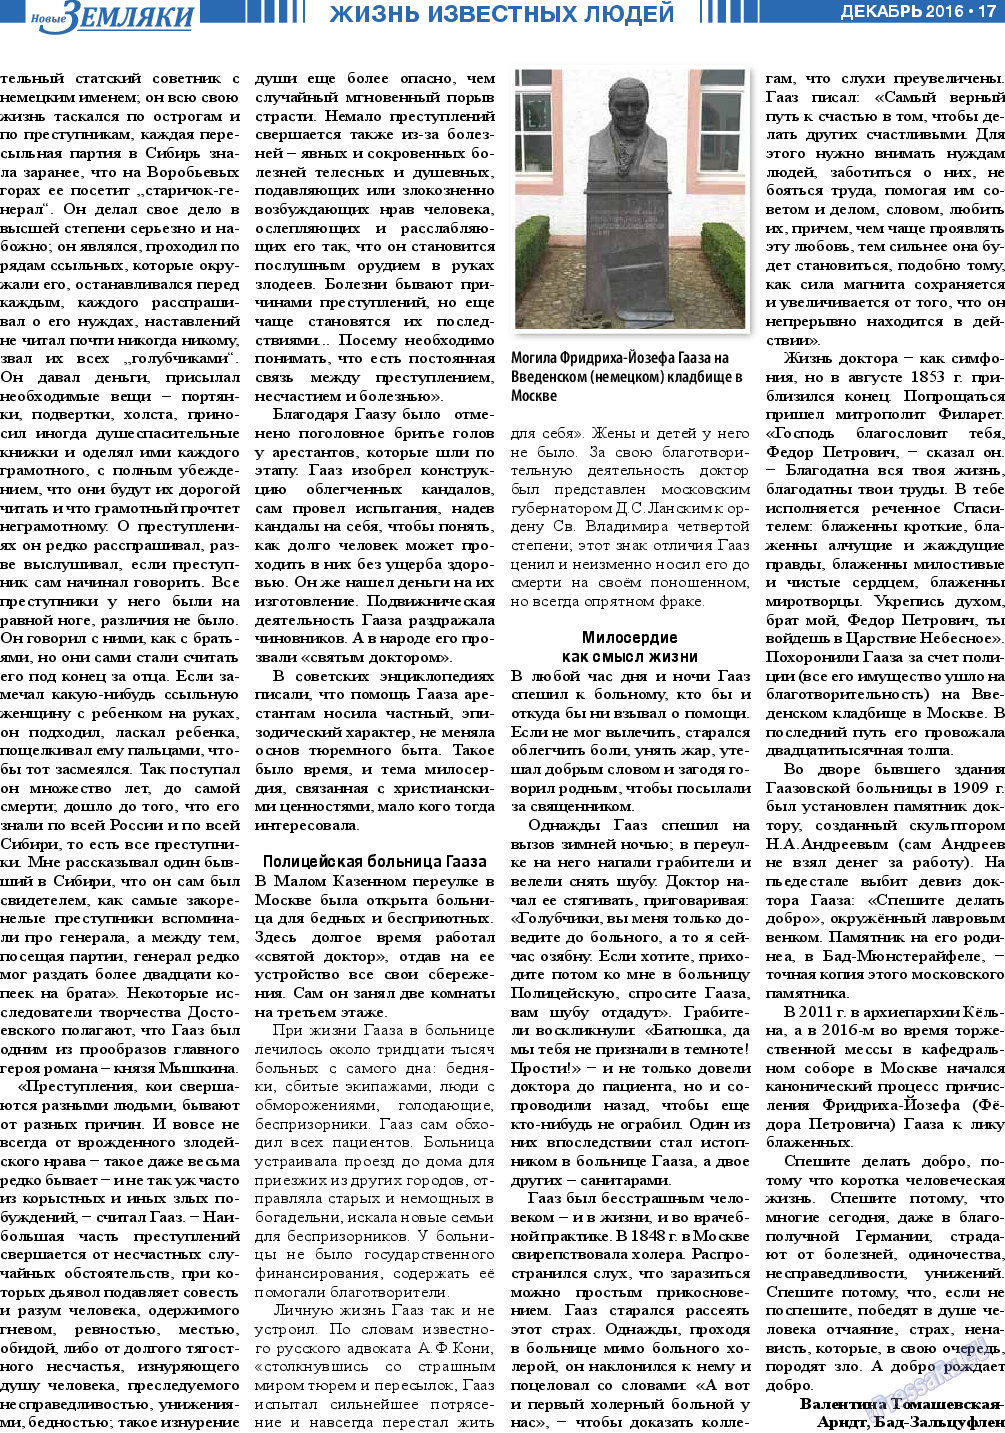 Новые Земляки, газета. 2016 №12 стр.17